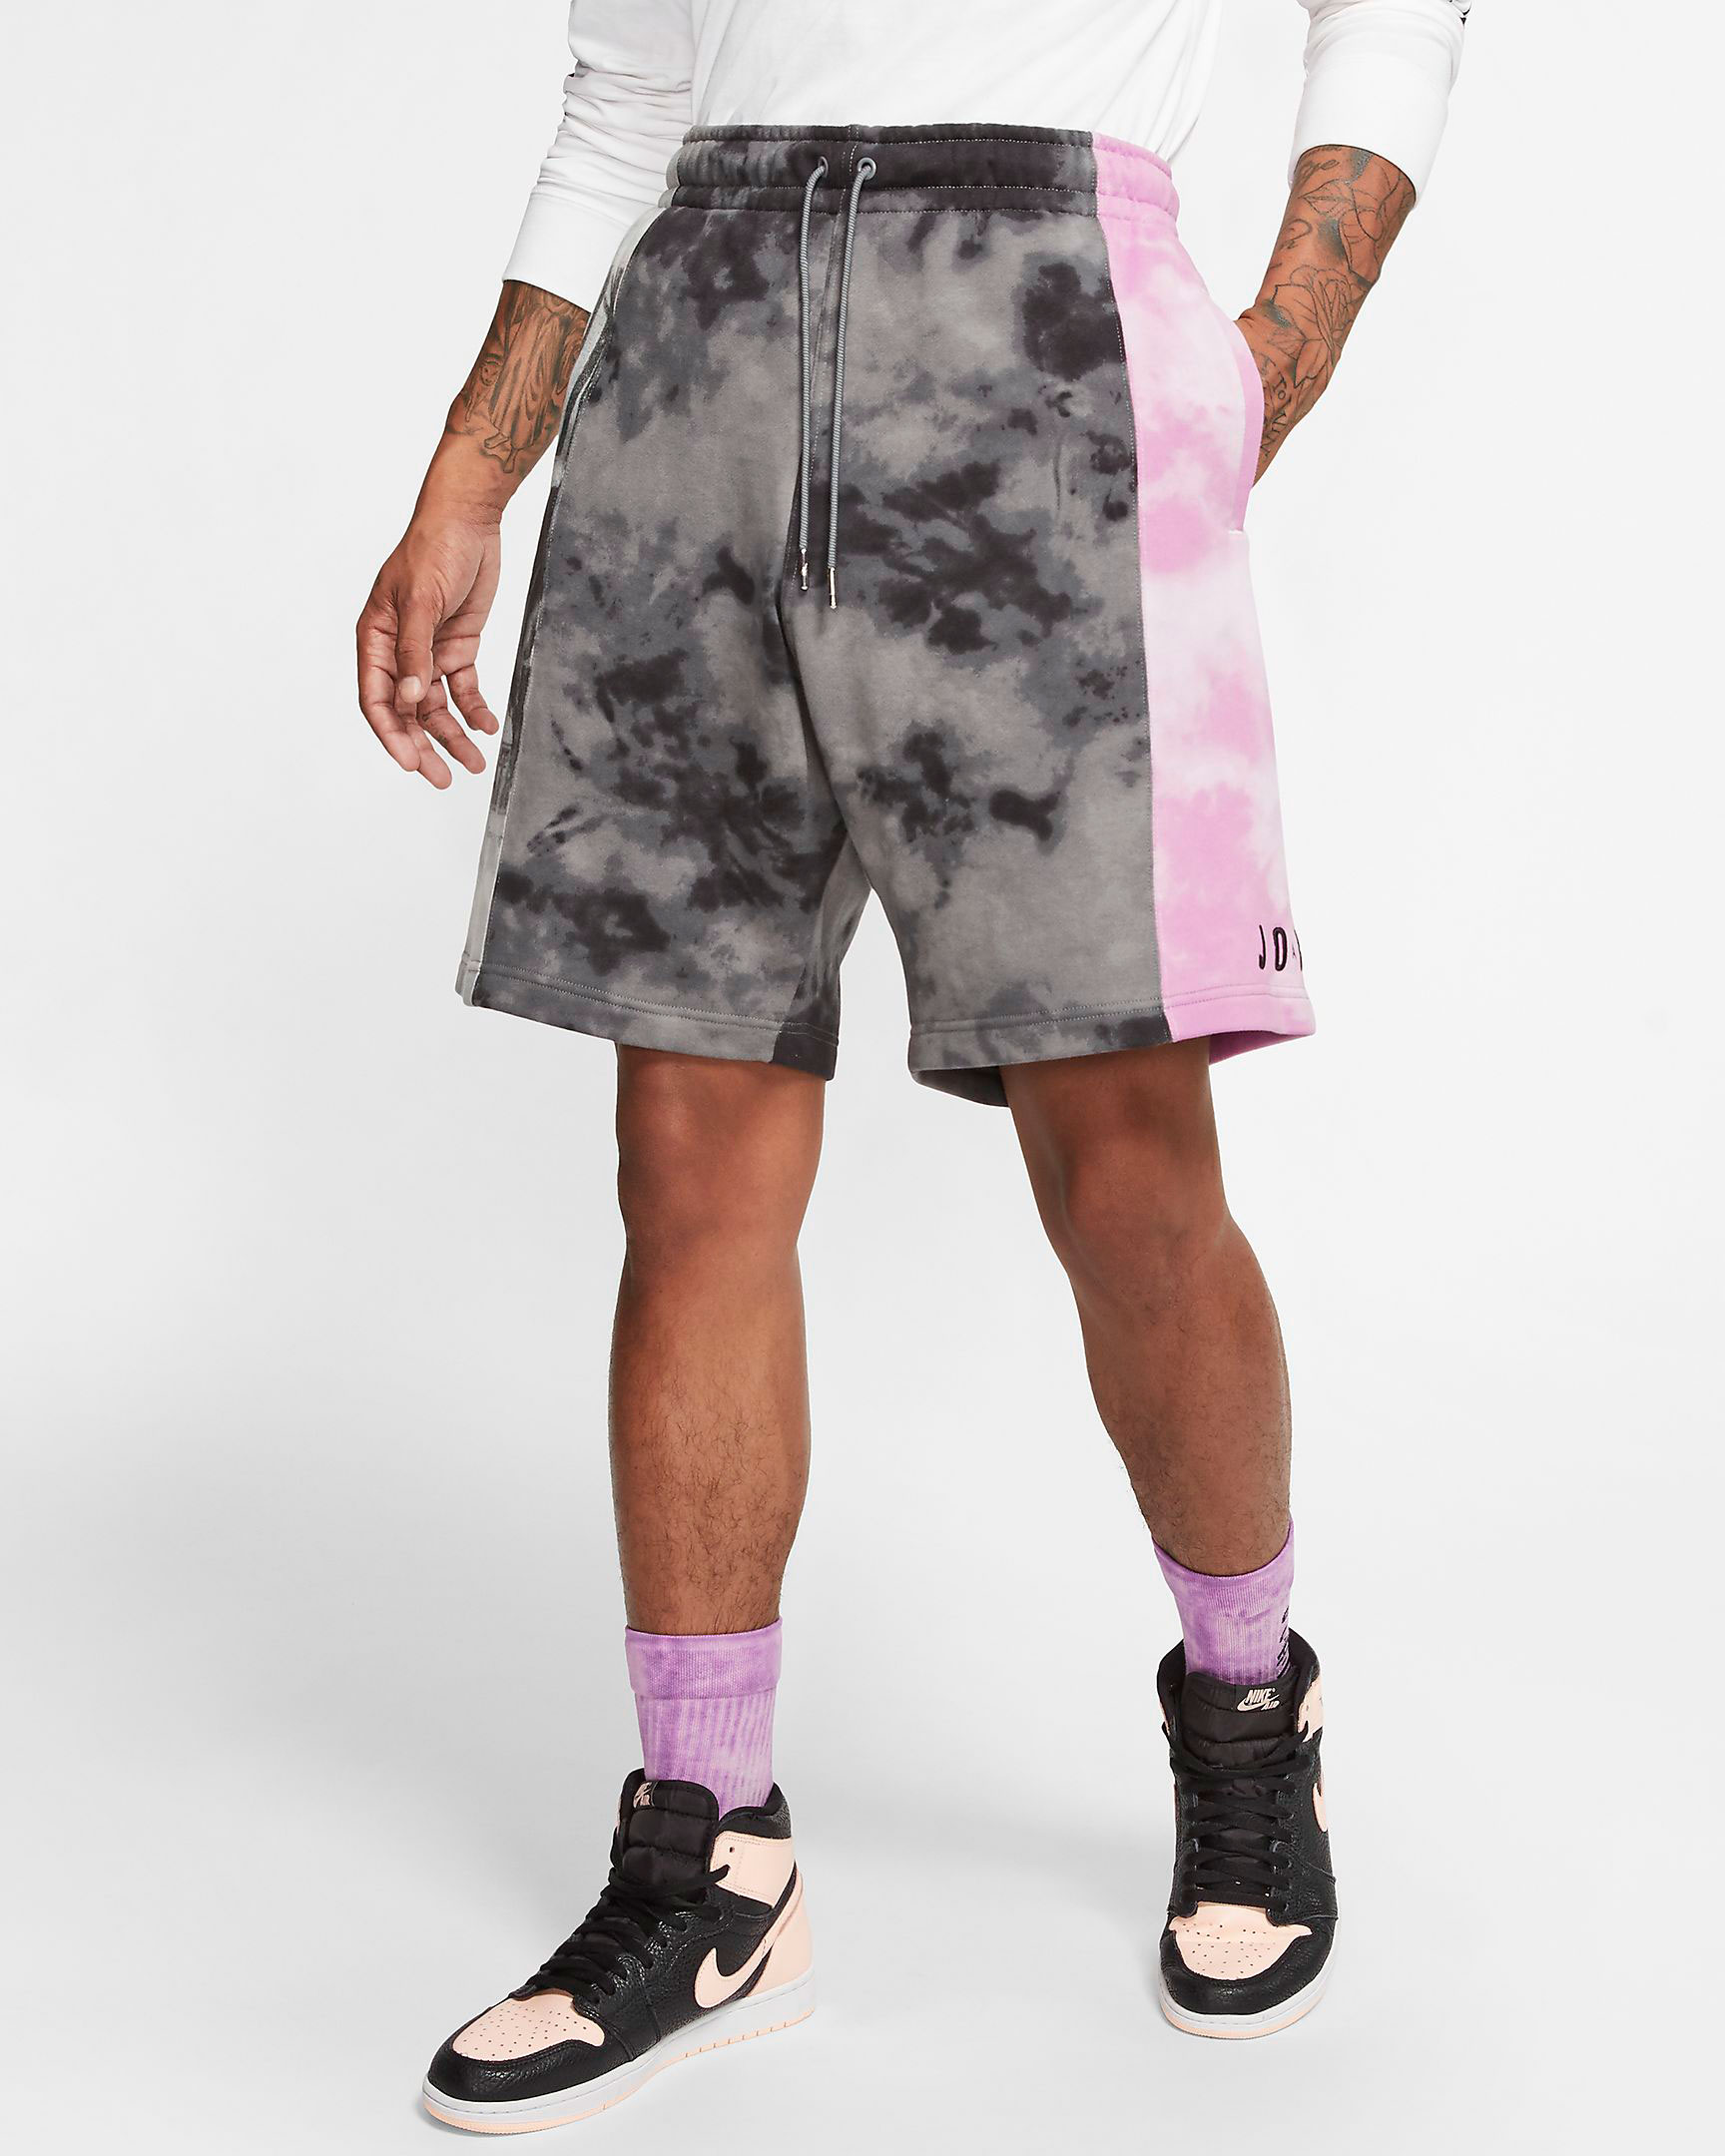 jordn-sport-dna-vintage-shorts-black-grey-purple-1